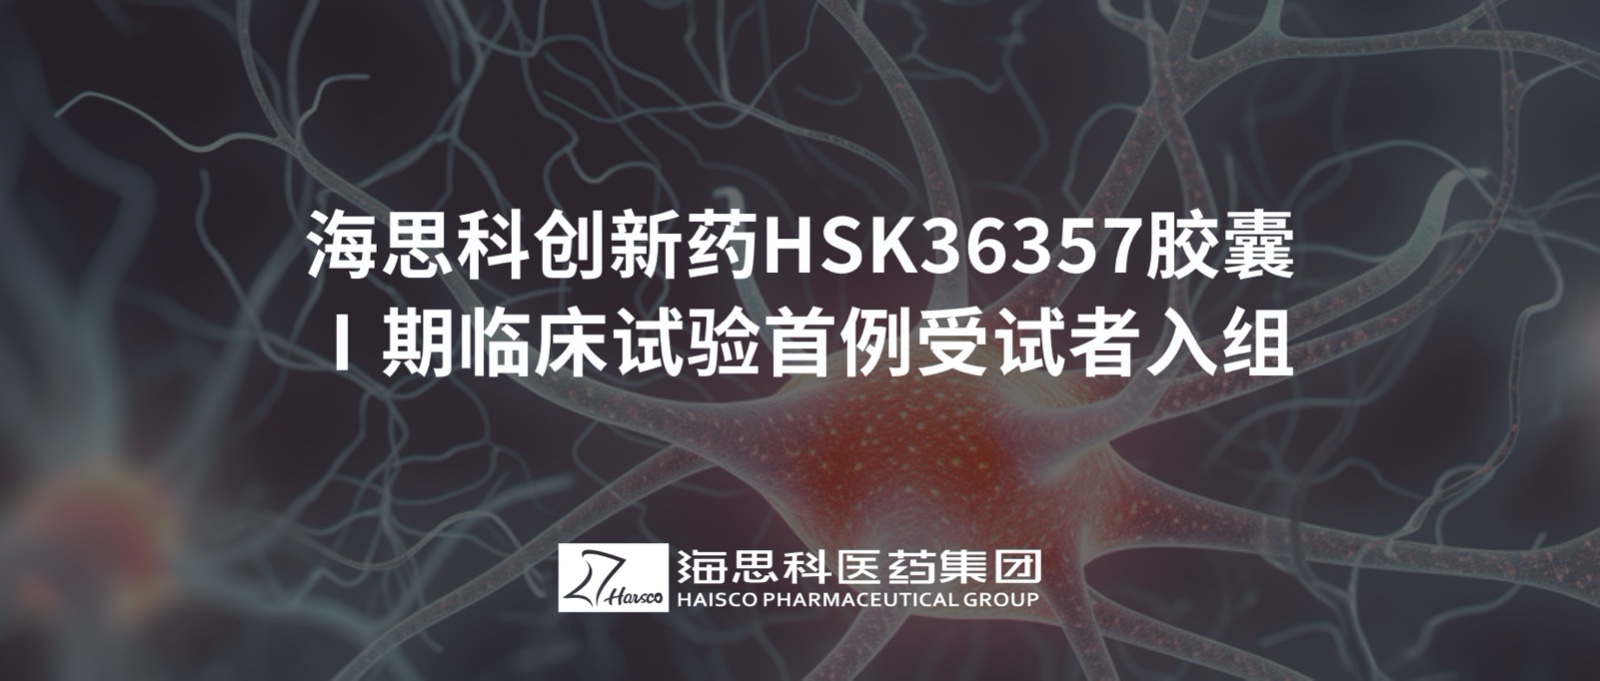 恒峰官网g22创新药HSK36357胶囊Ⅰ期临床试验首例受试者入组